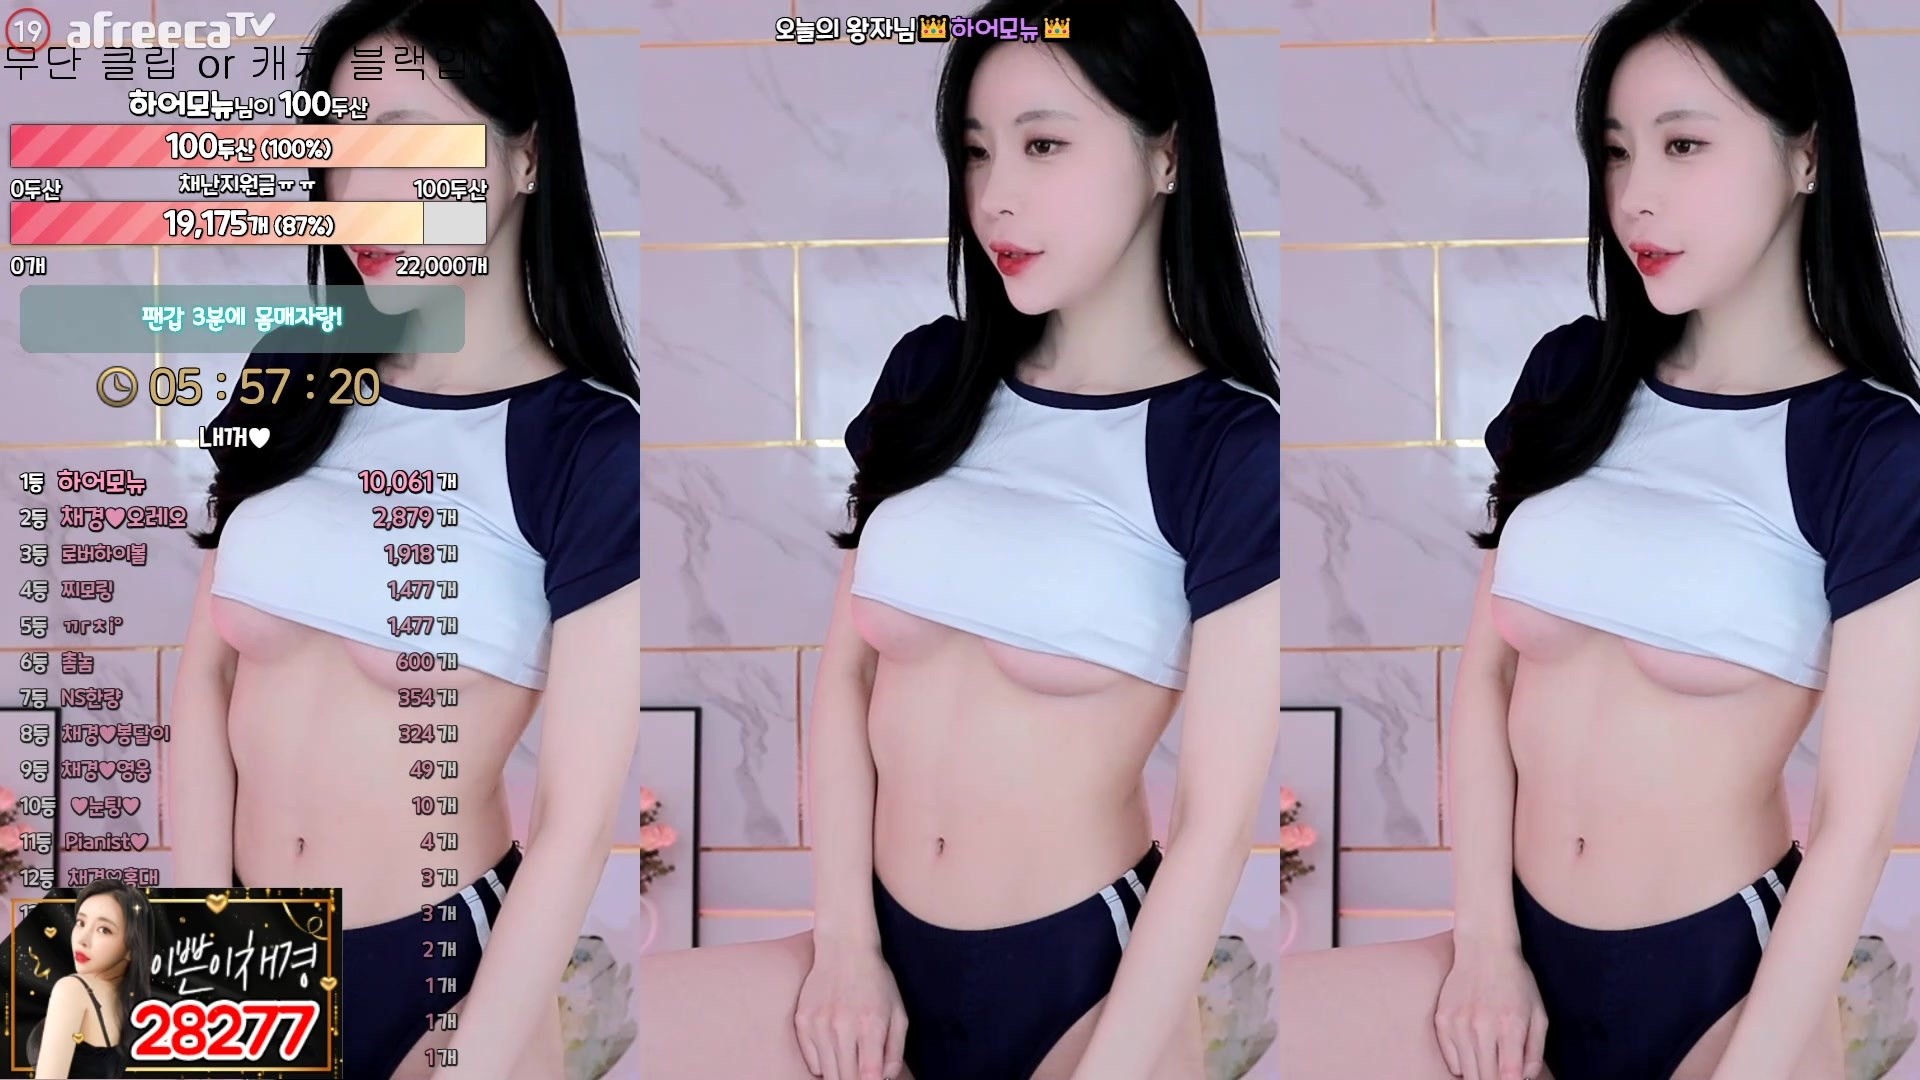 AfreecaTV Dance Girl @Kyo Tsai - Seductive Hot Dance Mini Collection (6)